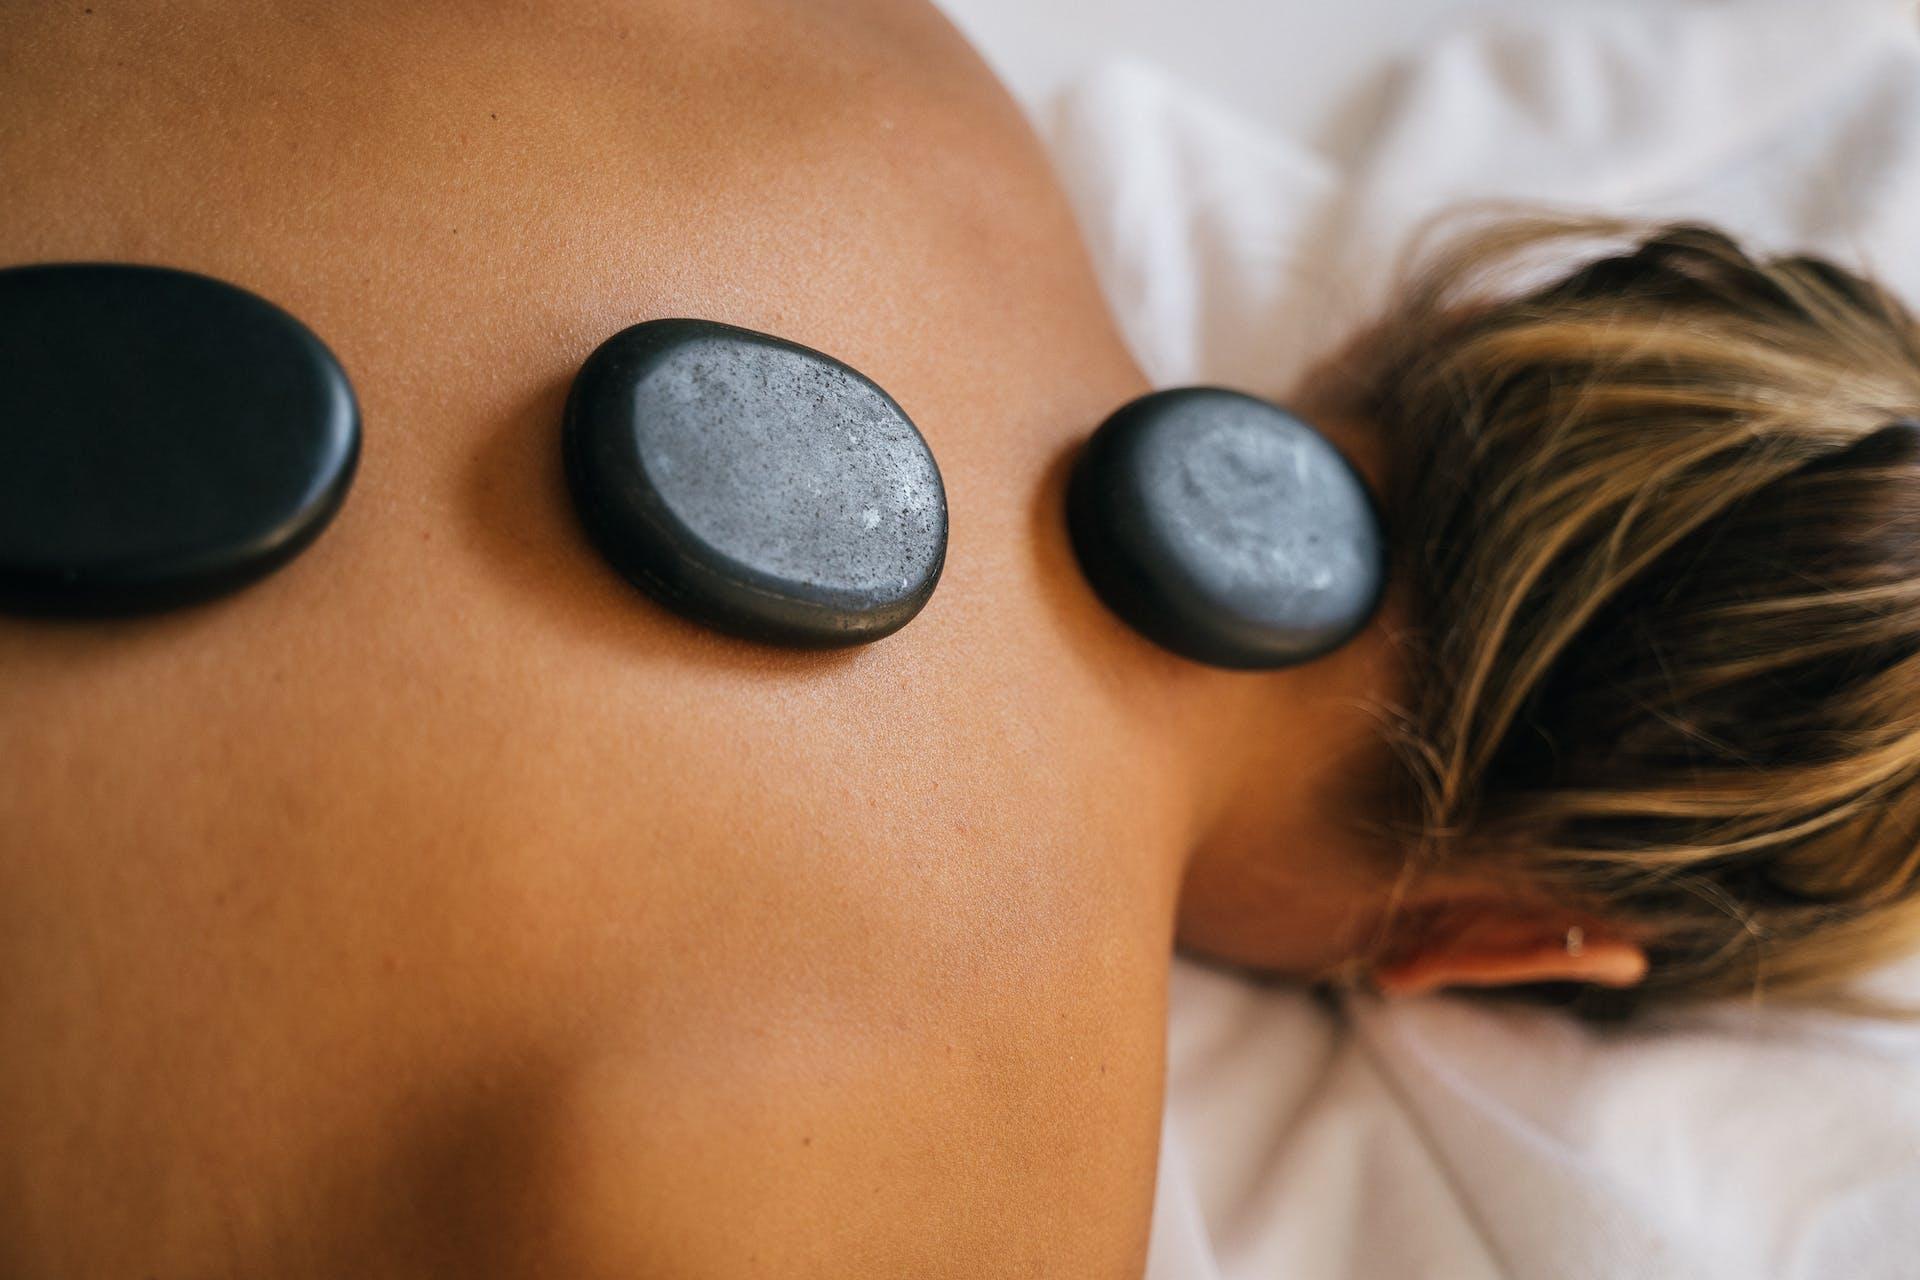 Hot Stone Massage, die Frau liegt auf dem Bauch und man sieht drei Steine auf Ihrem Rücken liegen.